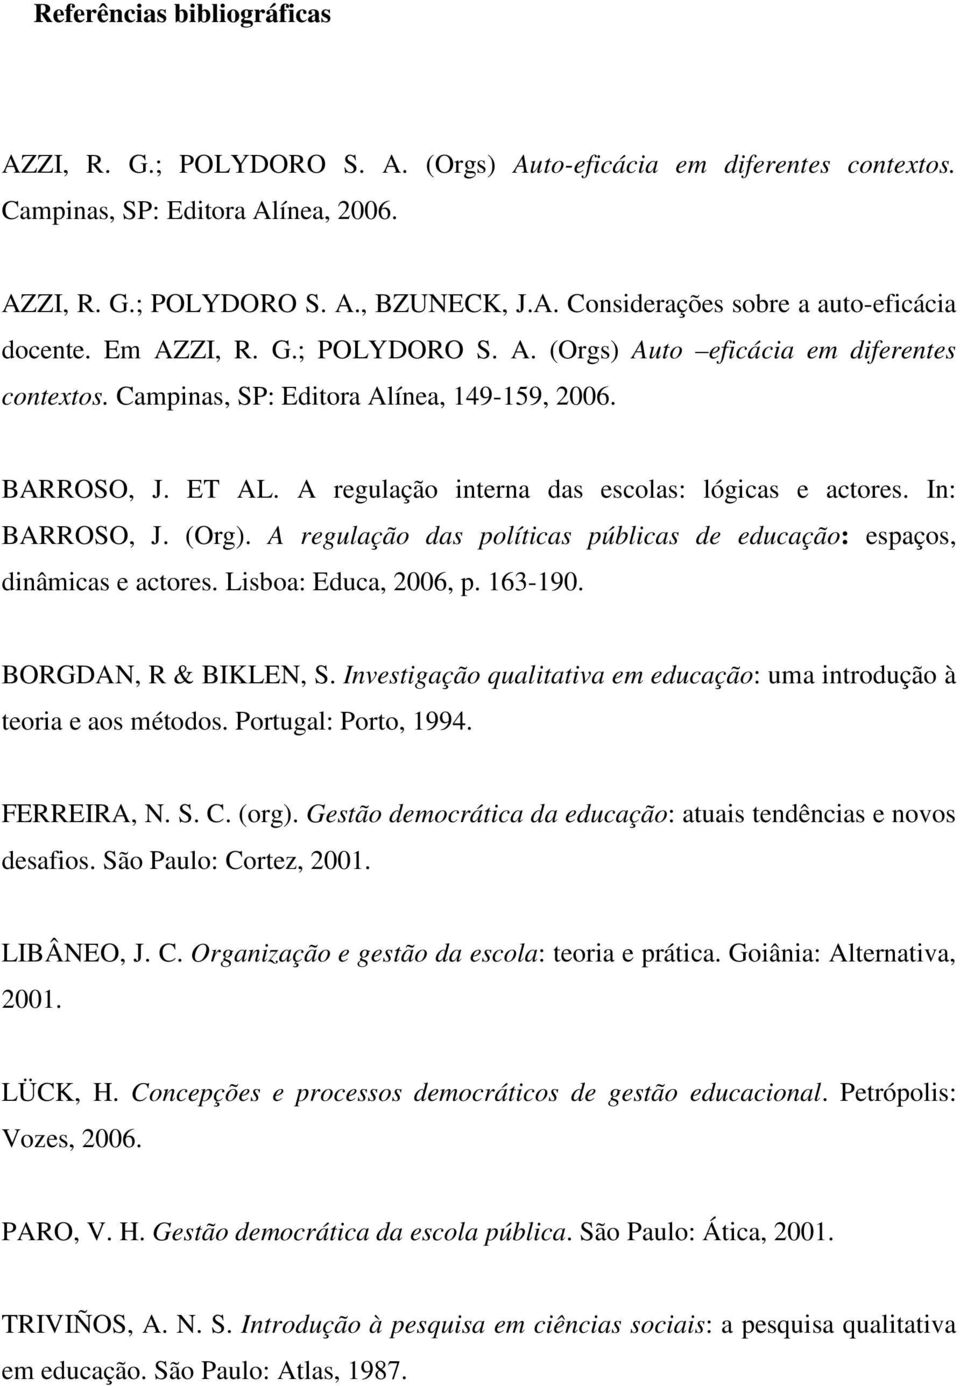 In: BARROSO, J. (Org). A regulação das políticas públicas de educação: espaços, dinâmicas e actores. Lisboa: Educa, 2006, p. 163-190. BORGDAN, R & BIKLEN, S.